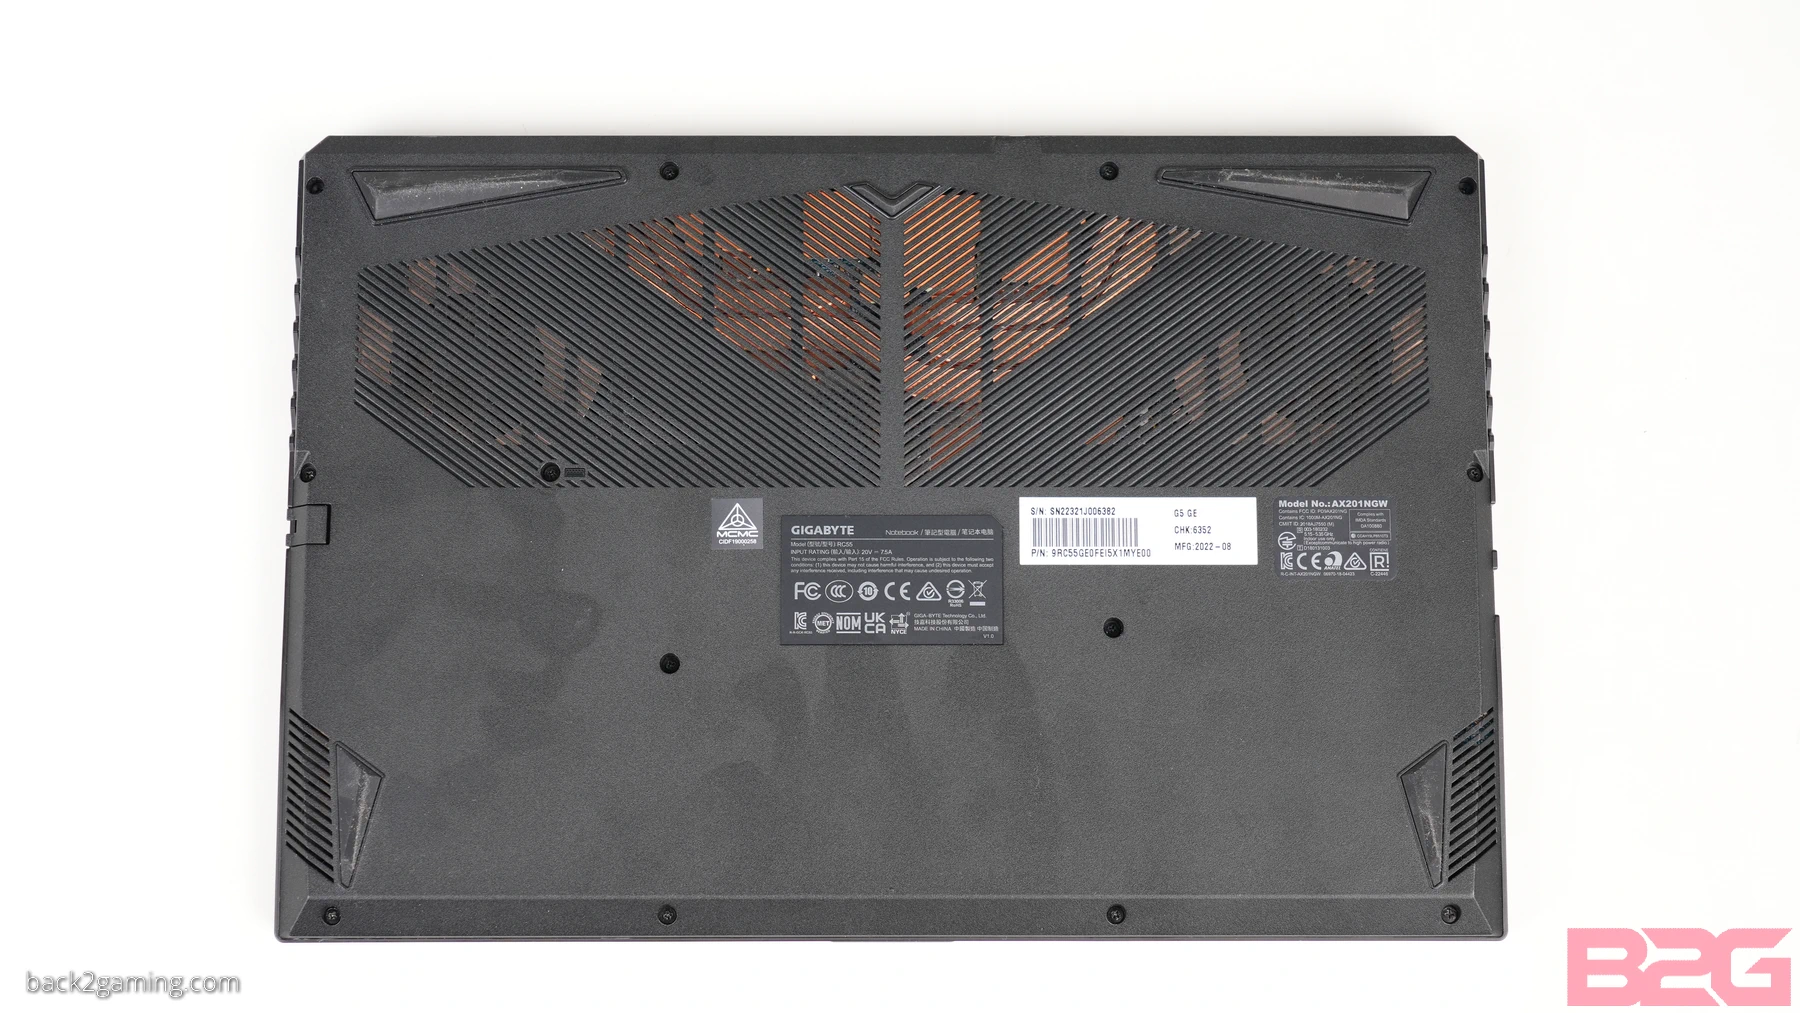 GIGABYTE G5 GE (i5-12500H + RTX 3050) Gaming Laptop Review - returnal